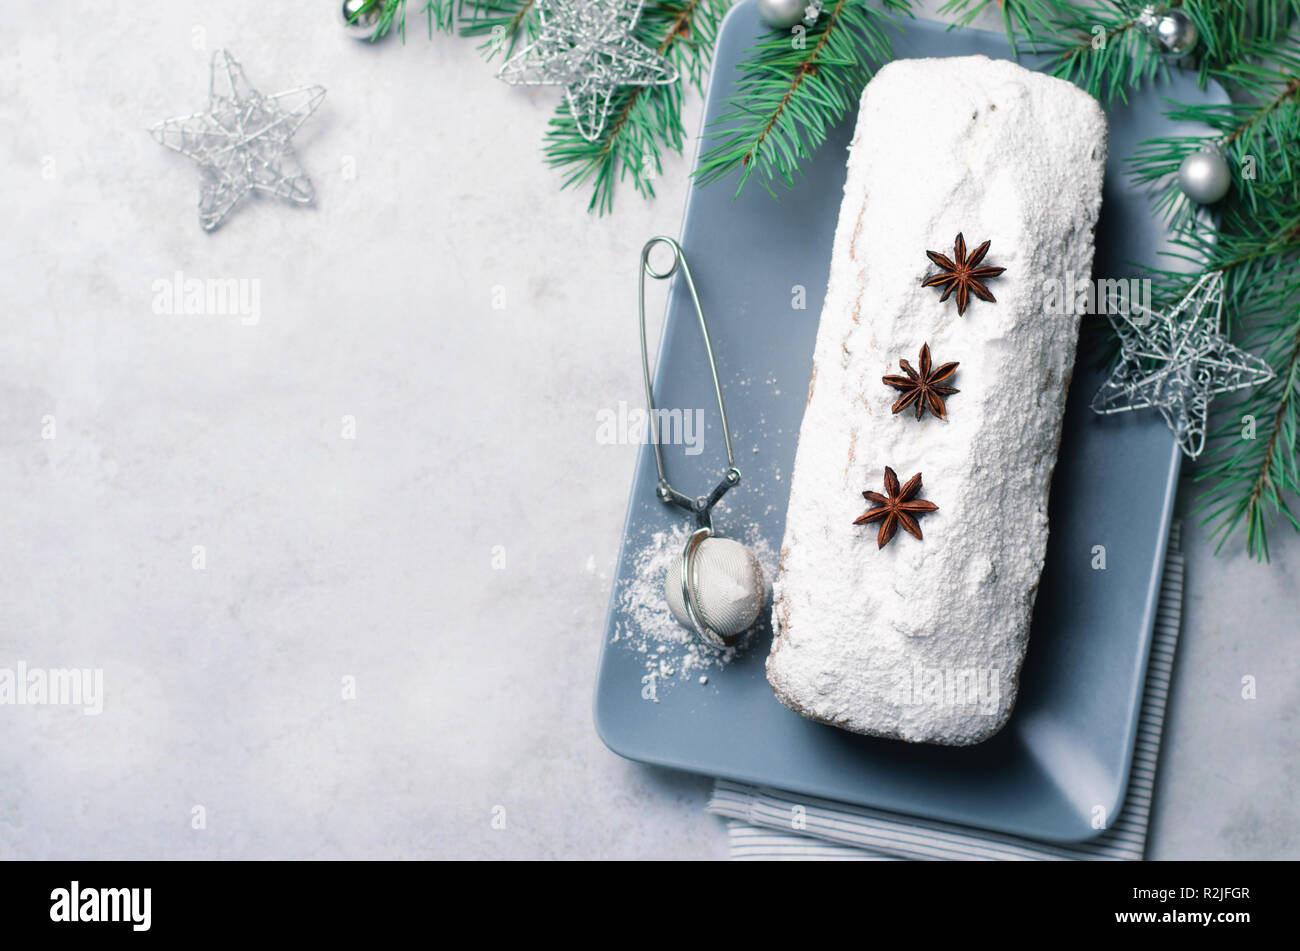 Brot Kuchen mit Puderzucker bestäubt, Weihnachten und Winter Urlaub gönnen, hausgemachte Pound Cake auf grauem Hintergrund Stockfoto